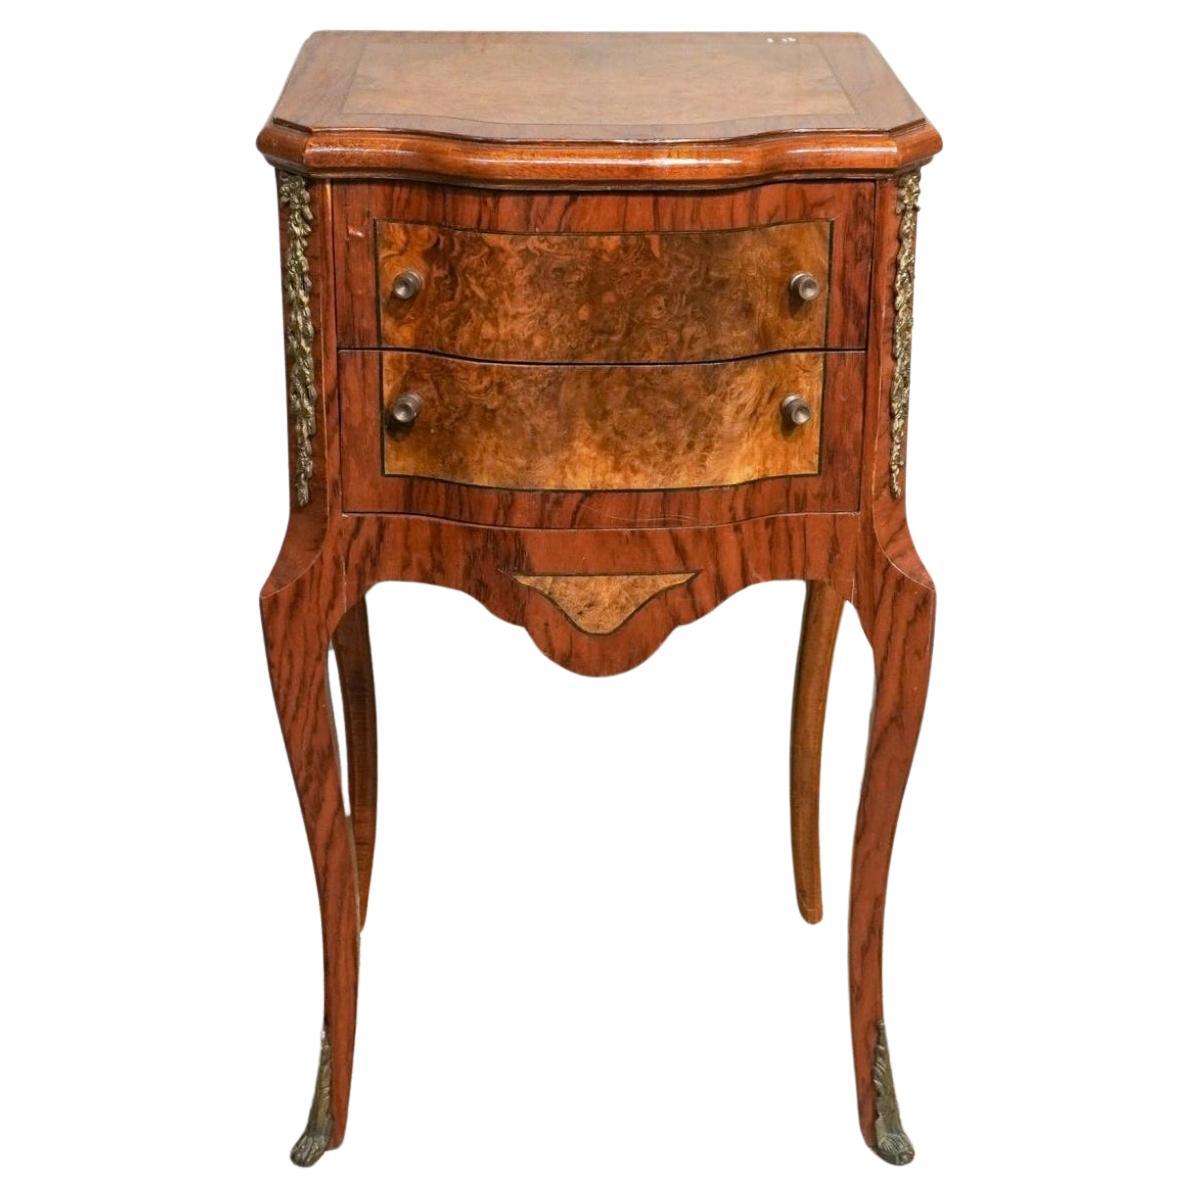 Table d'appoint en bois fruitier incrusté de loupe, montée sur laiton, début du 20e siècle, style Louis XV.
Mesurent 17,25 L x 13 x 30,75 H.
Les tiroirs mesurent 12,5 